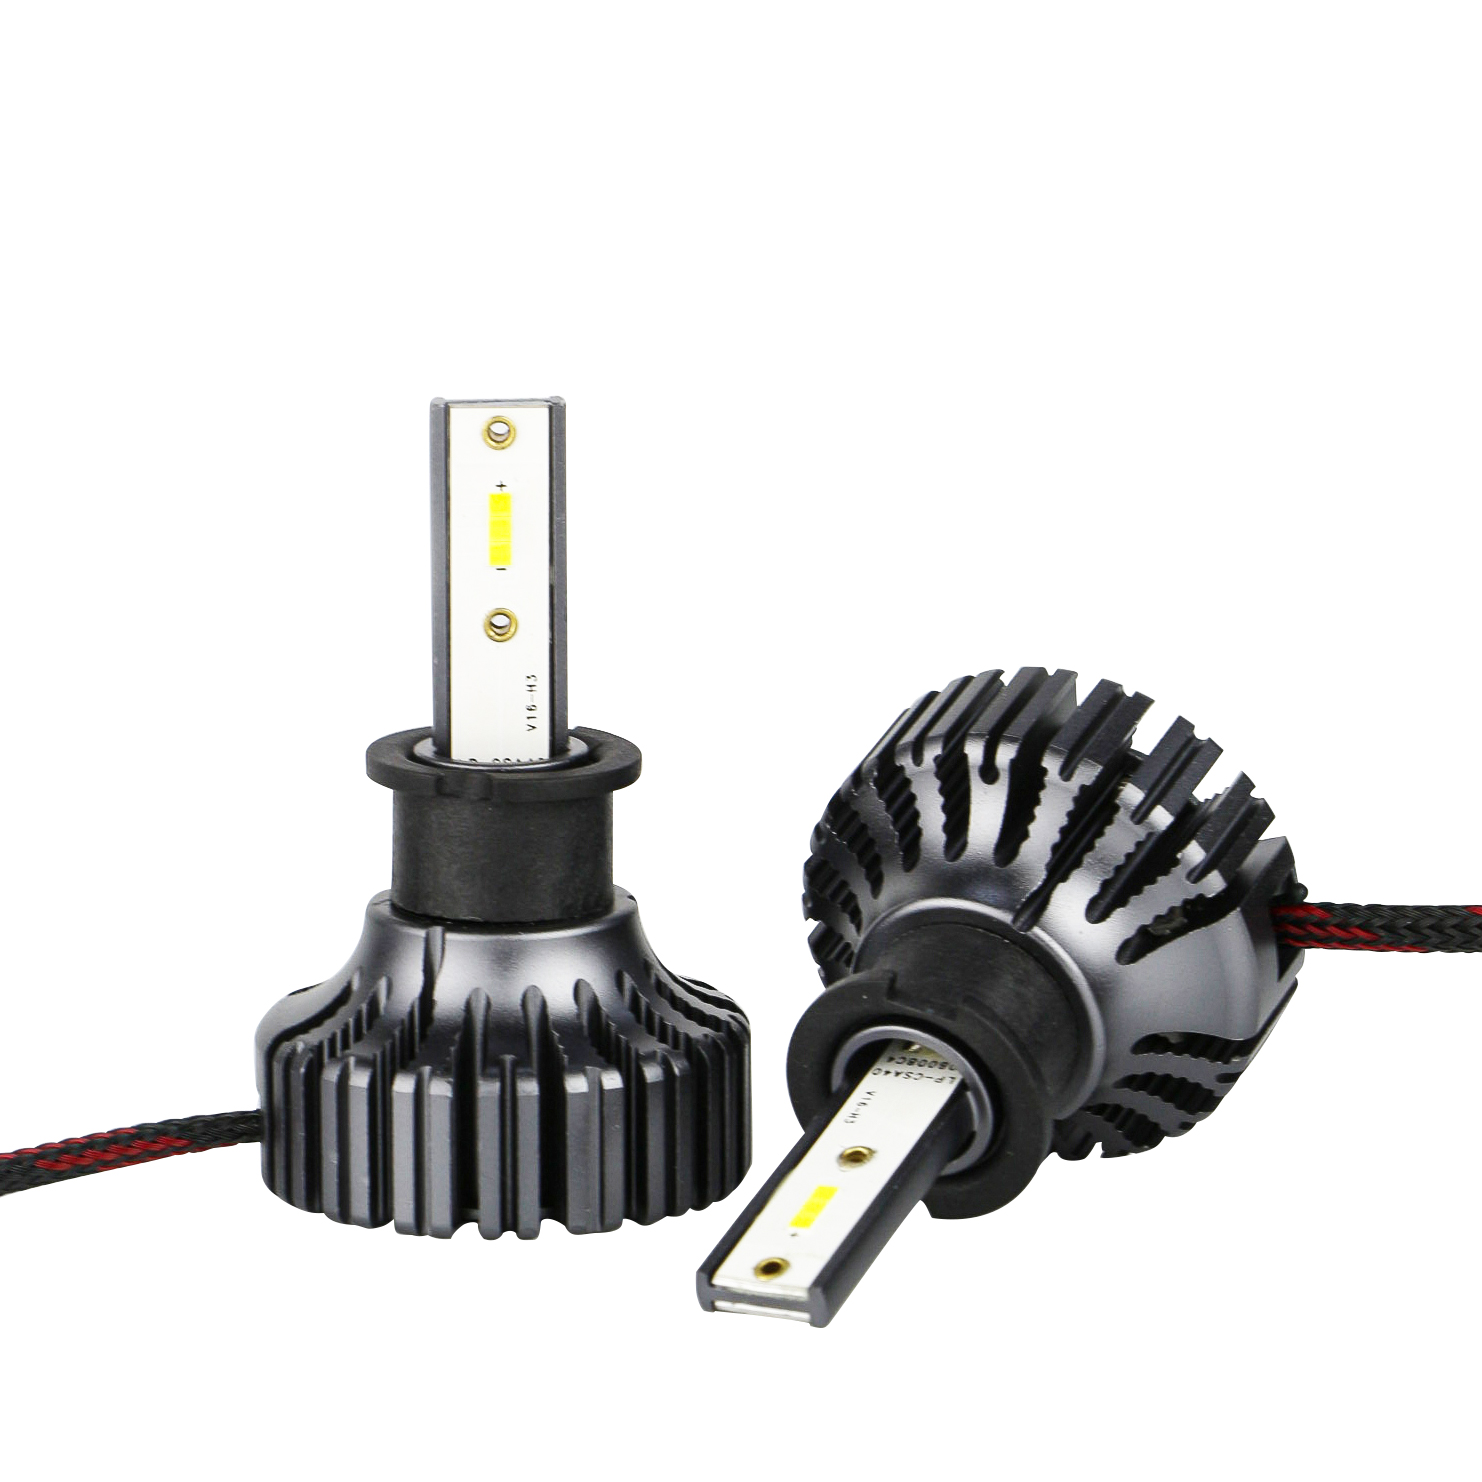 12V H3 LED Headlight Kit for Car